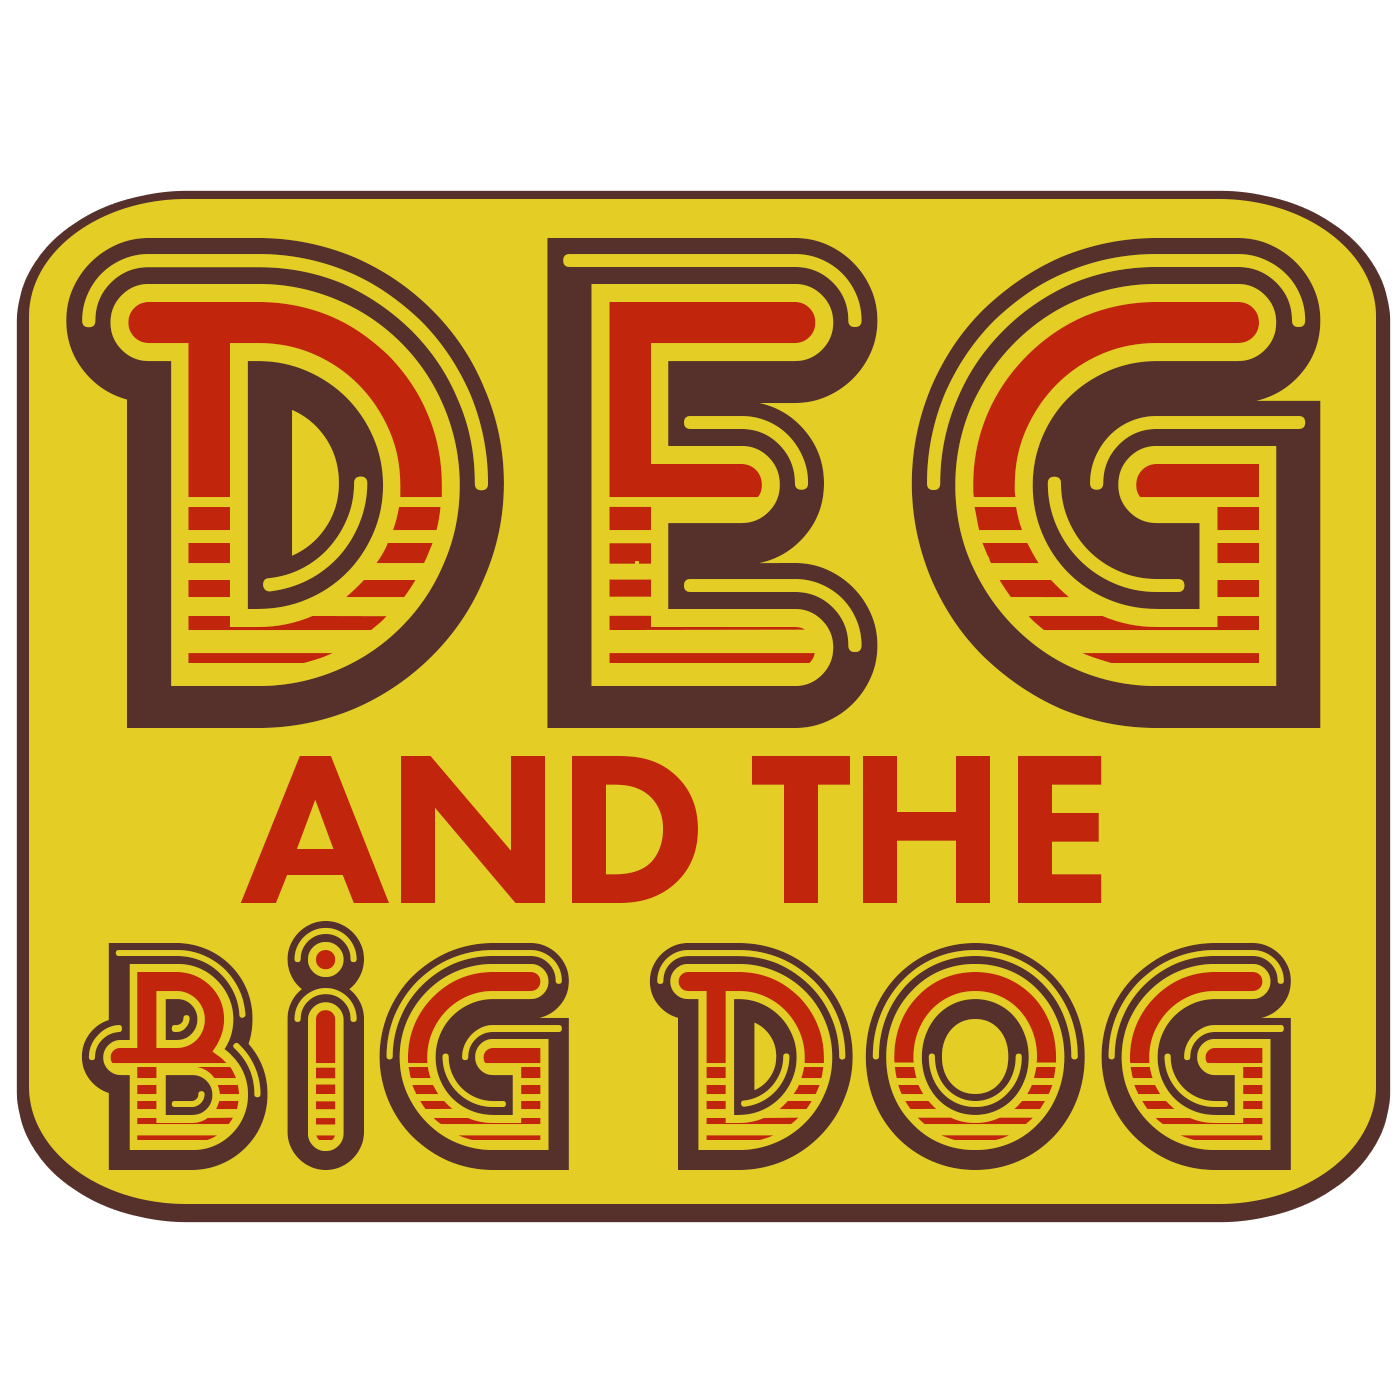 Deg and the Big Dog